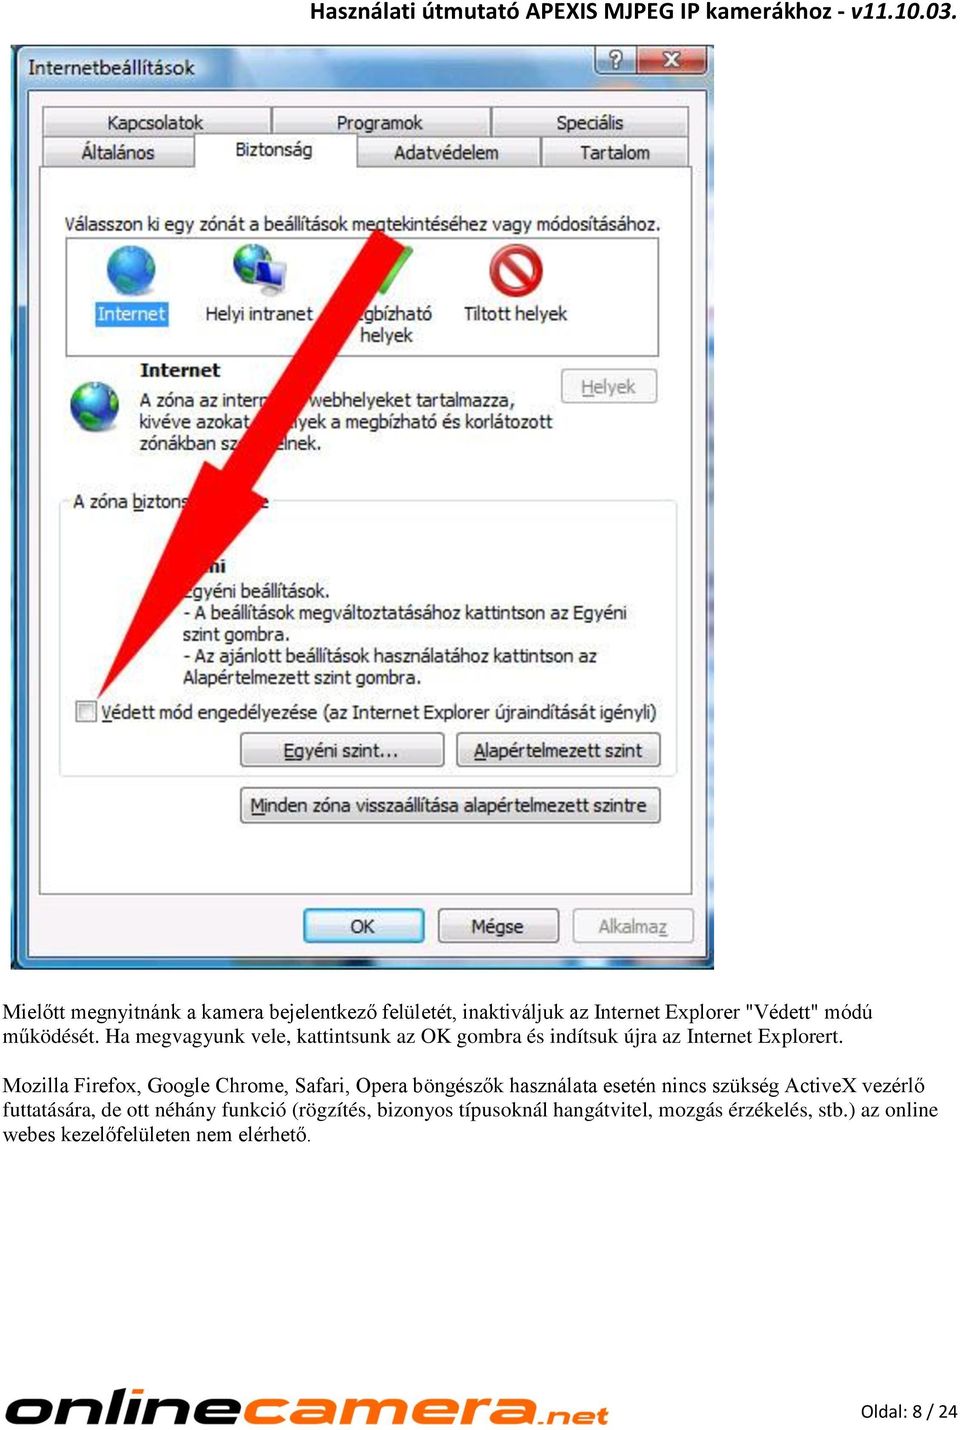 Mozilla Firefox, Google Chrome, Safari, Opera böngészők használata esetén nincs szükség ActiveX vezérlő